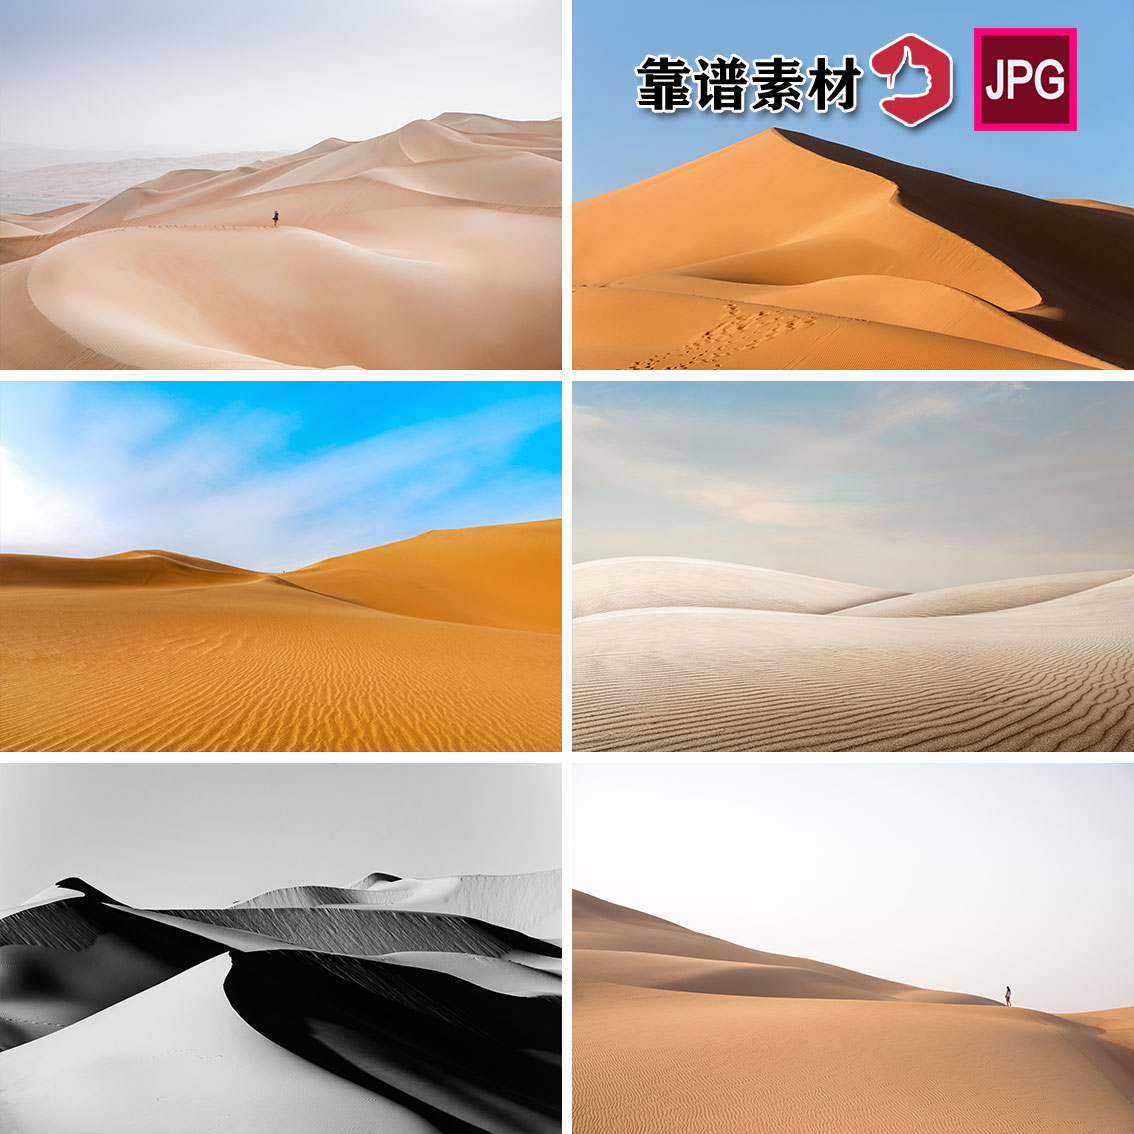 沙漠意境风景装饰画壁画壁纸高清图片设计素材